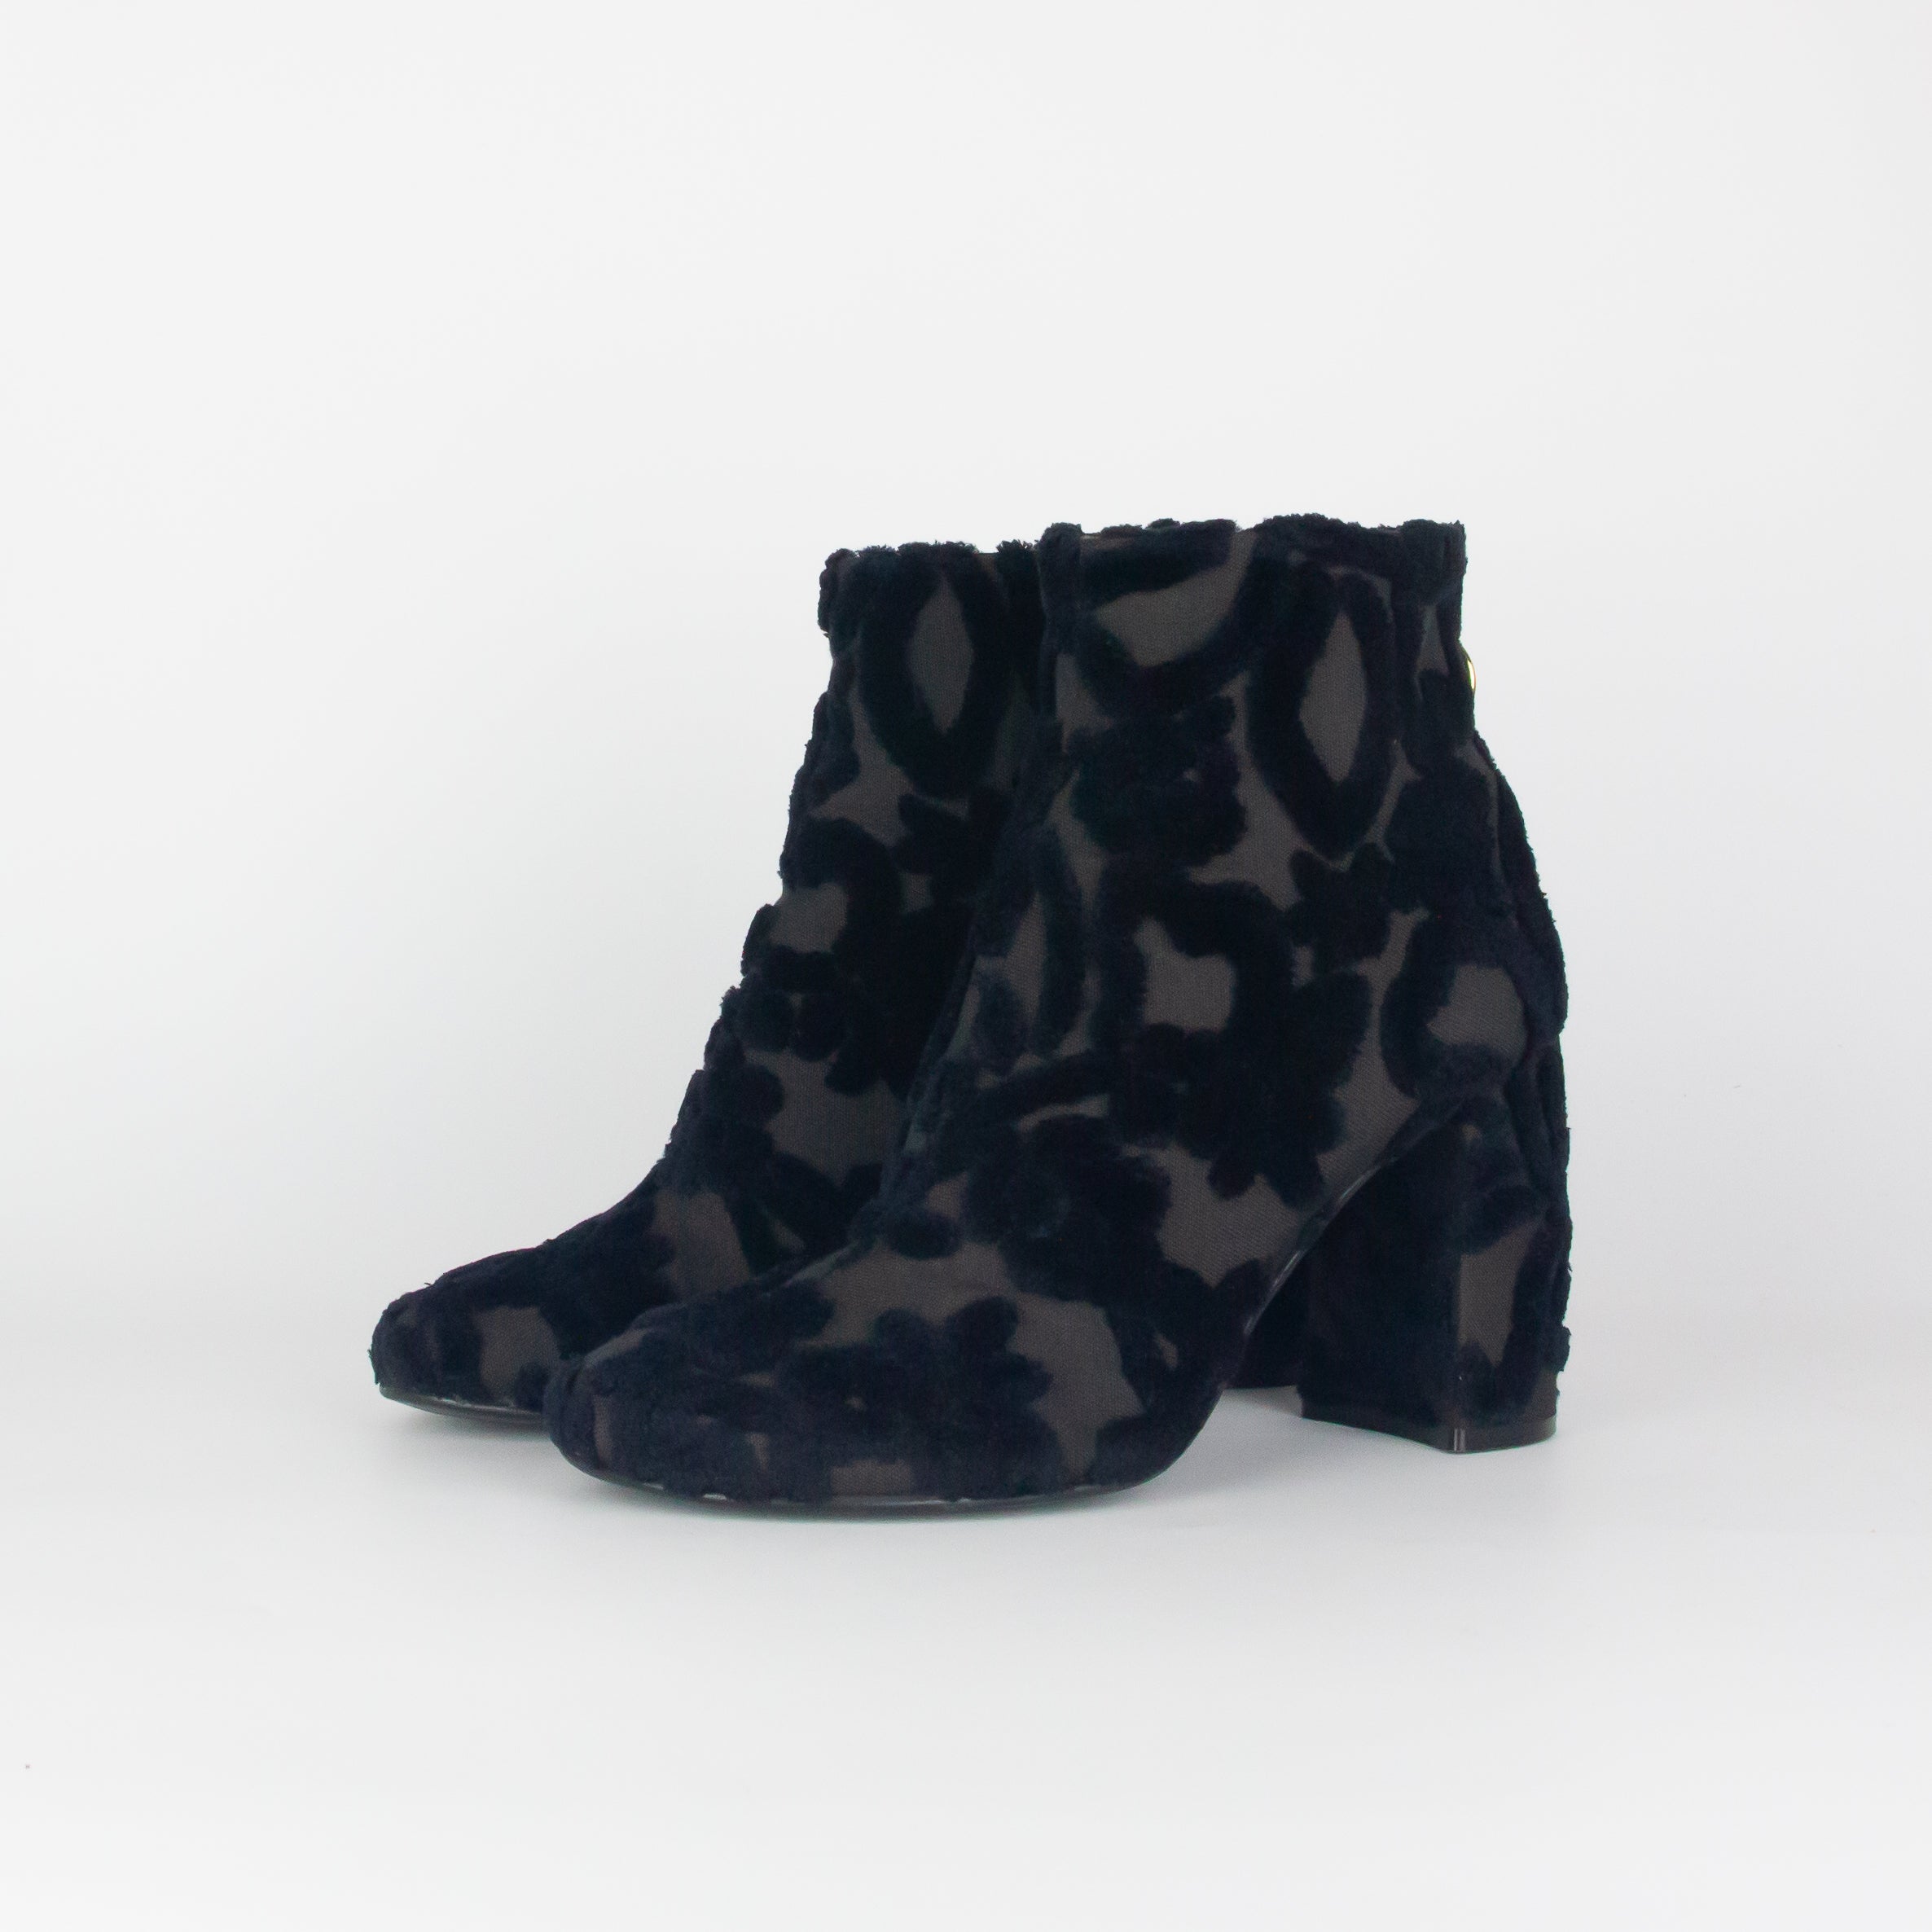 stella-mccartney-bottines-velours-velvet-black-boots